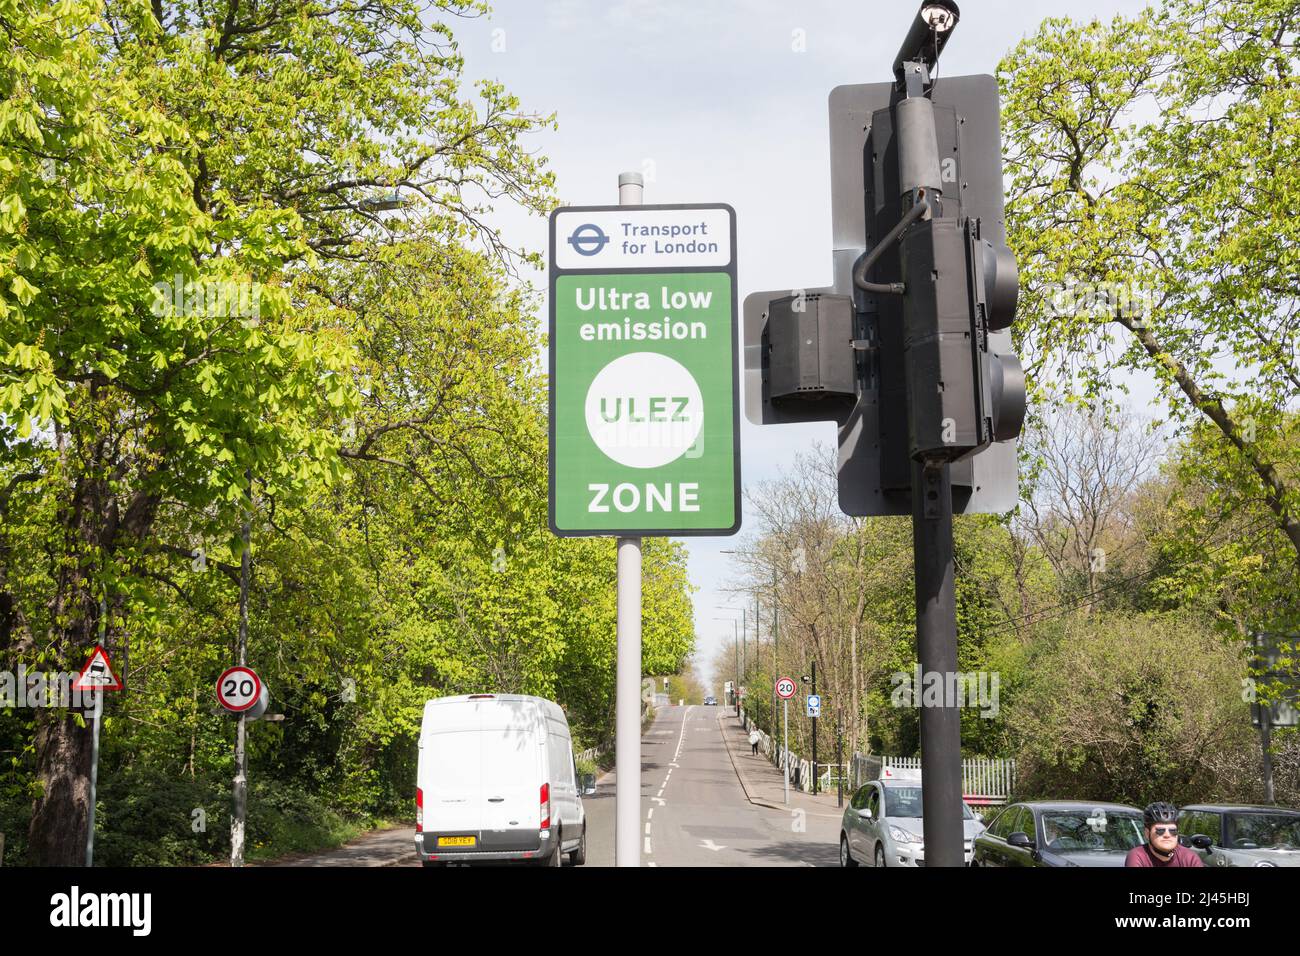 Signalisation indiquant le début du point de départ de la zone d'émission ultra-faible du transport pour Londres (TFL) sur Rocks Lane à Barnes, dans le sud-ouest de Londres, en Angleterre Banque D'Images